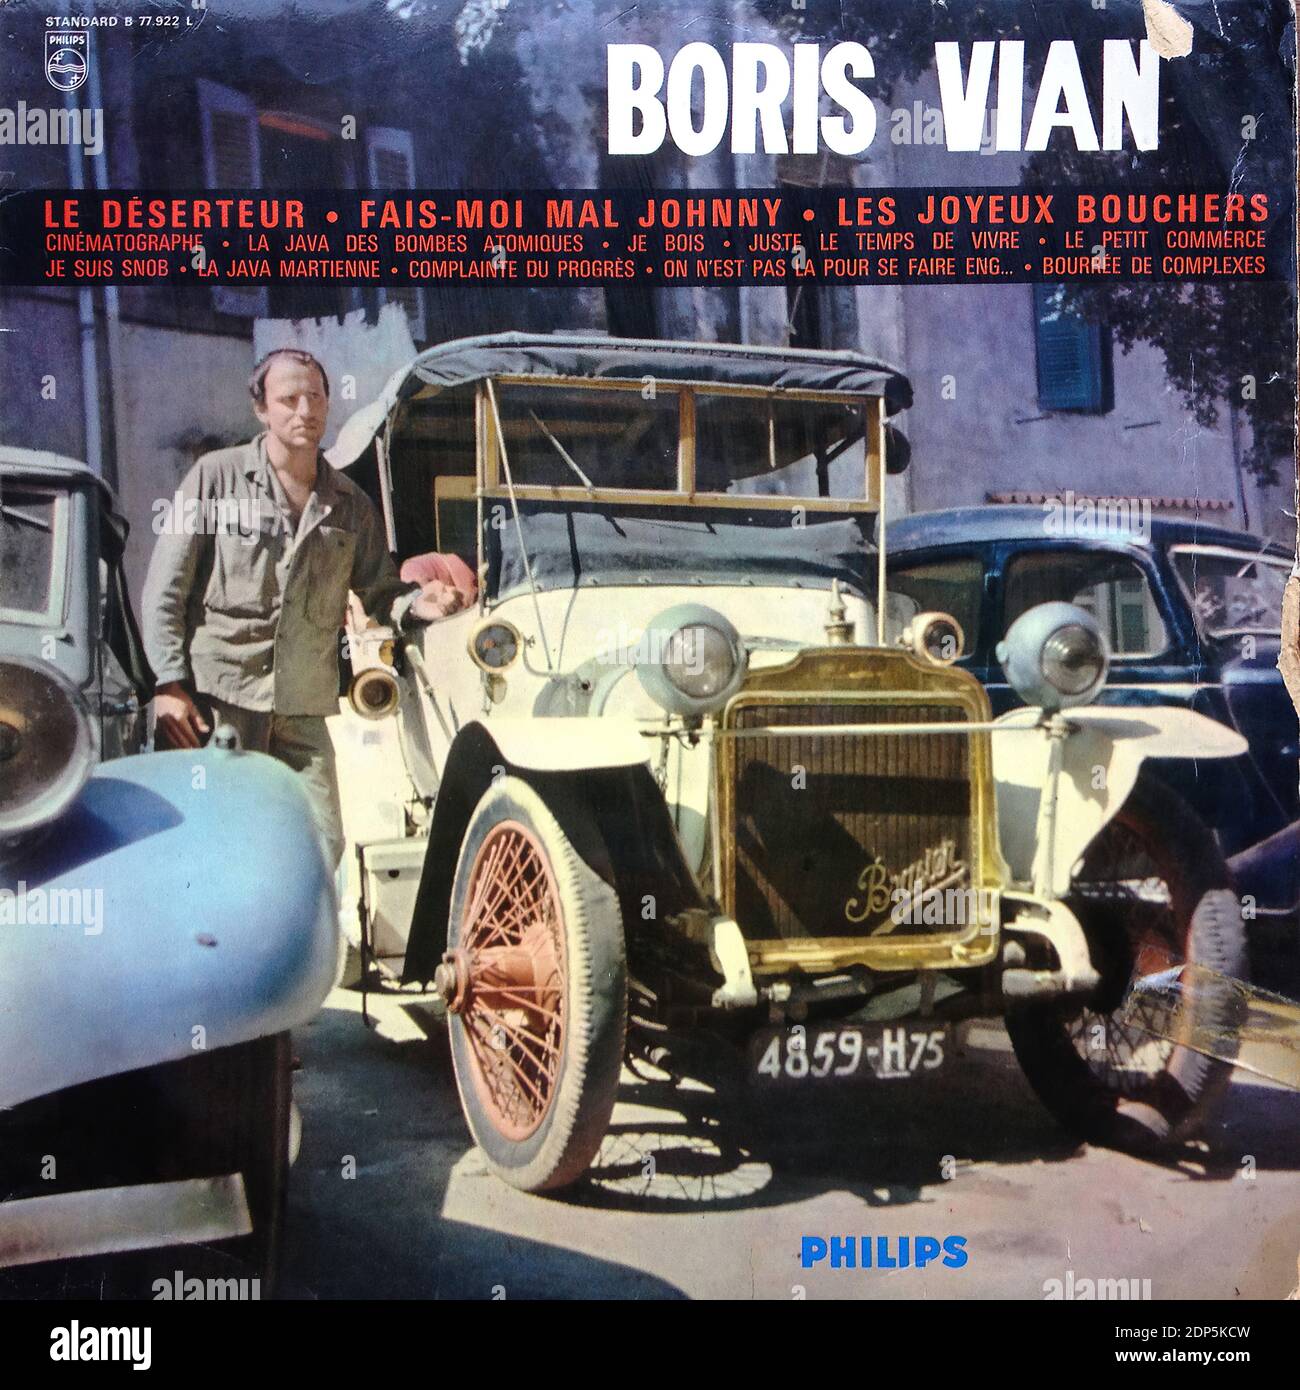 Boris Vian - Le Deserteur, Philips Standard B 77.922 L  - Vintage vinyl album cover Stock Photo